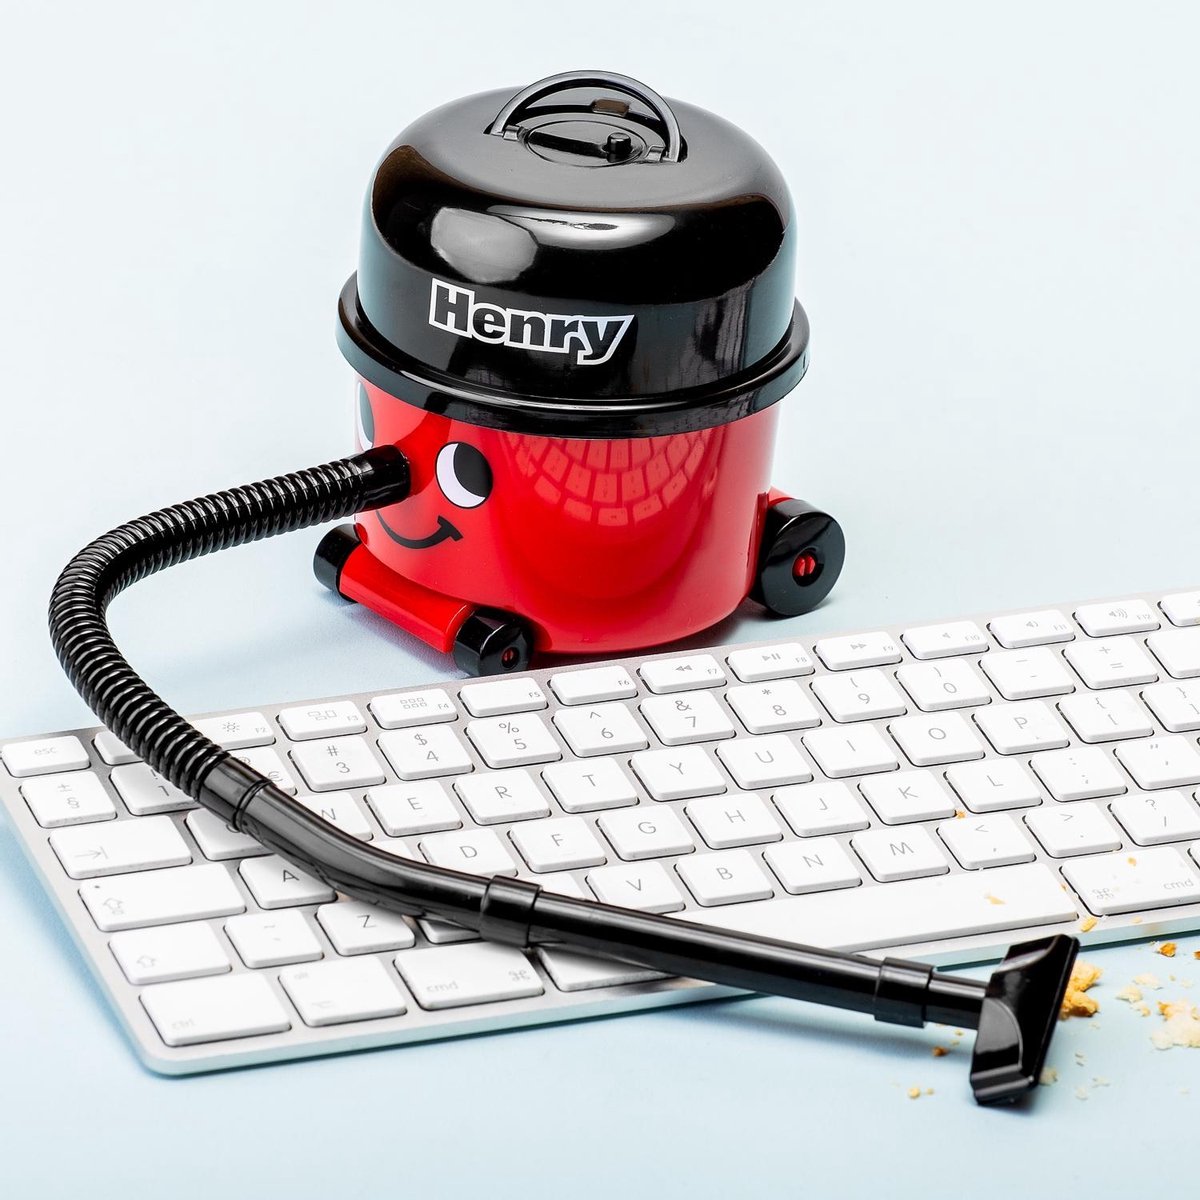 Henry Desk Vacuum bol.com